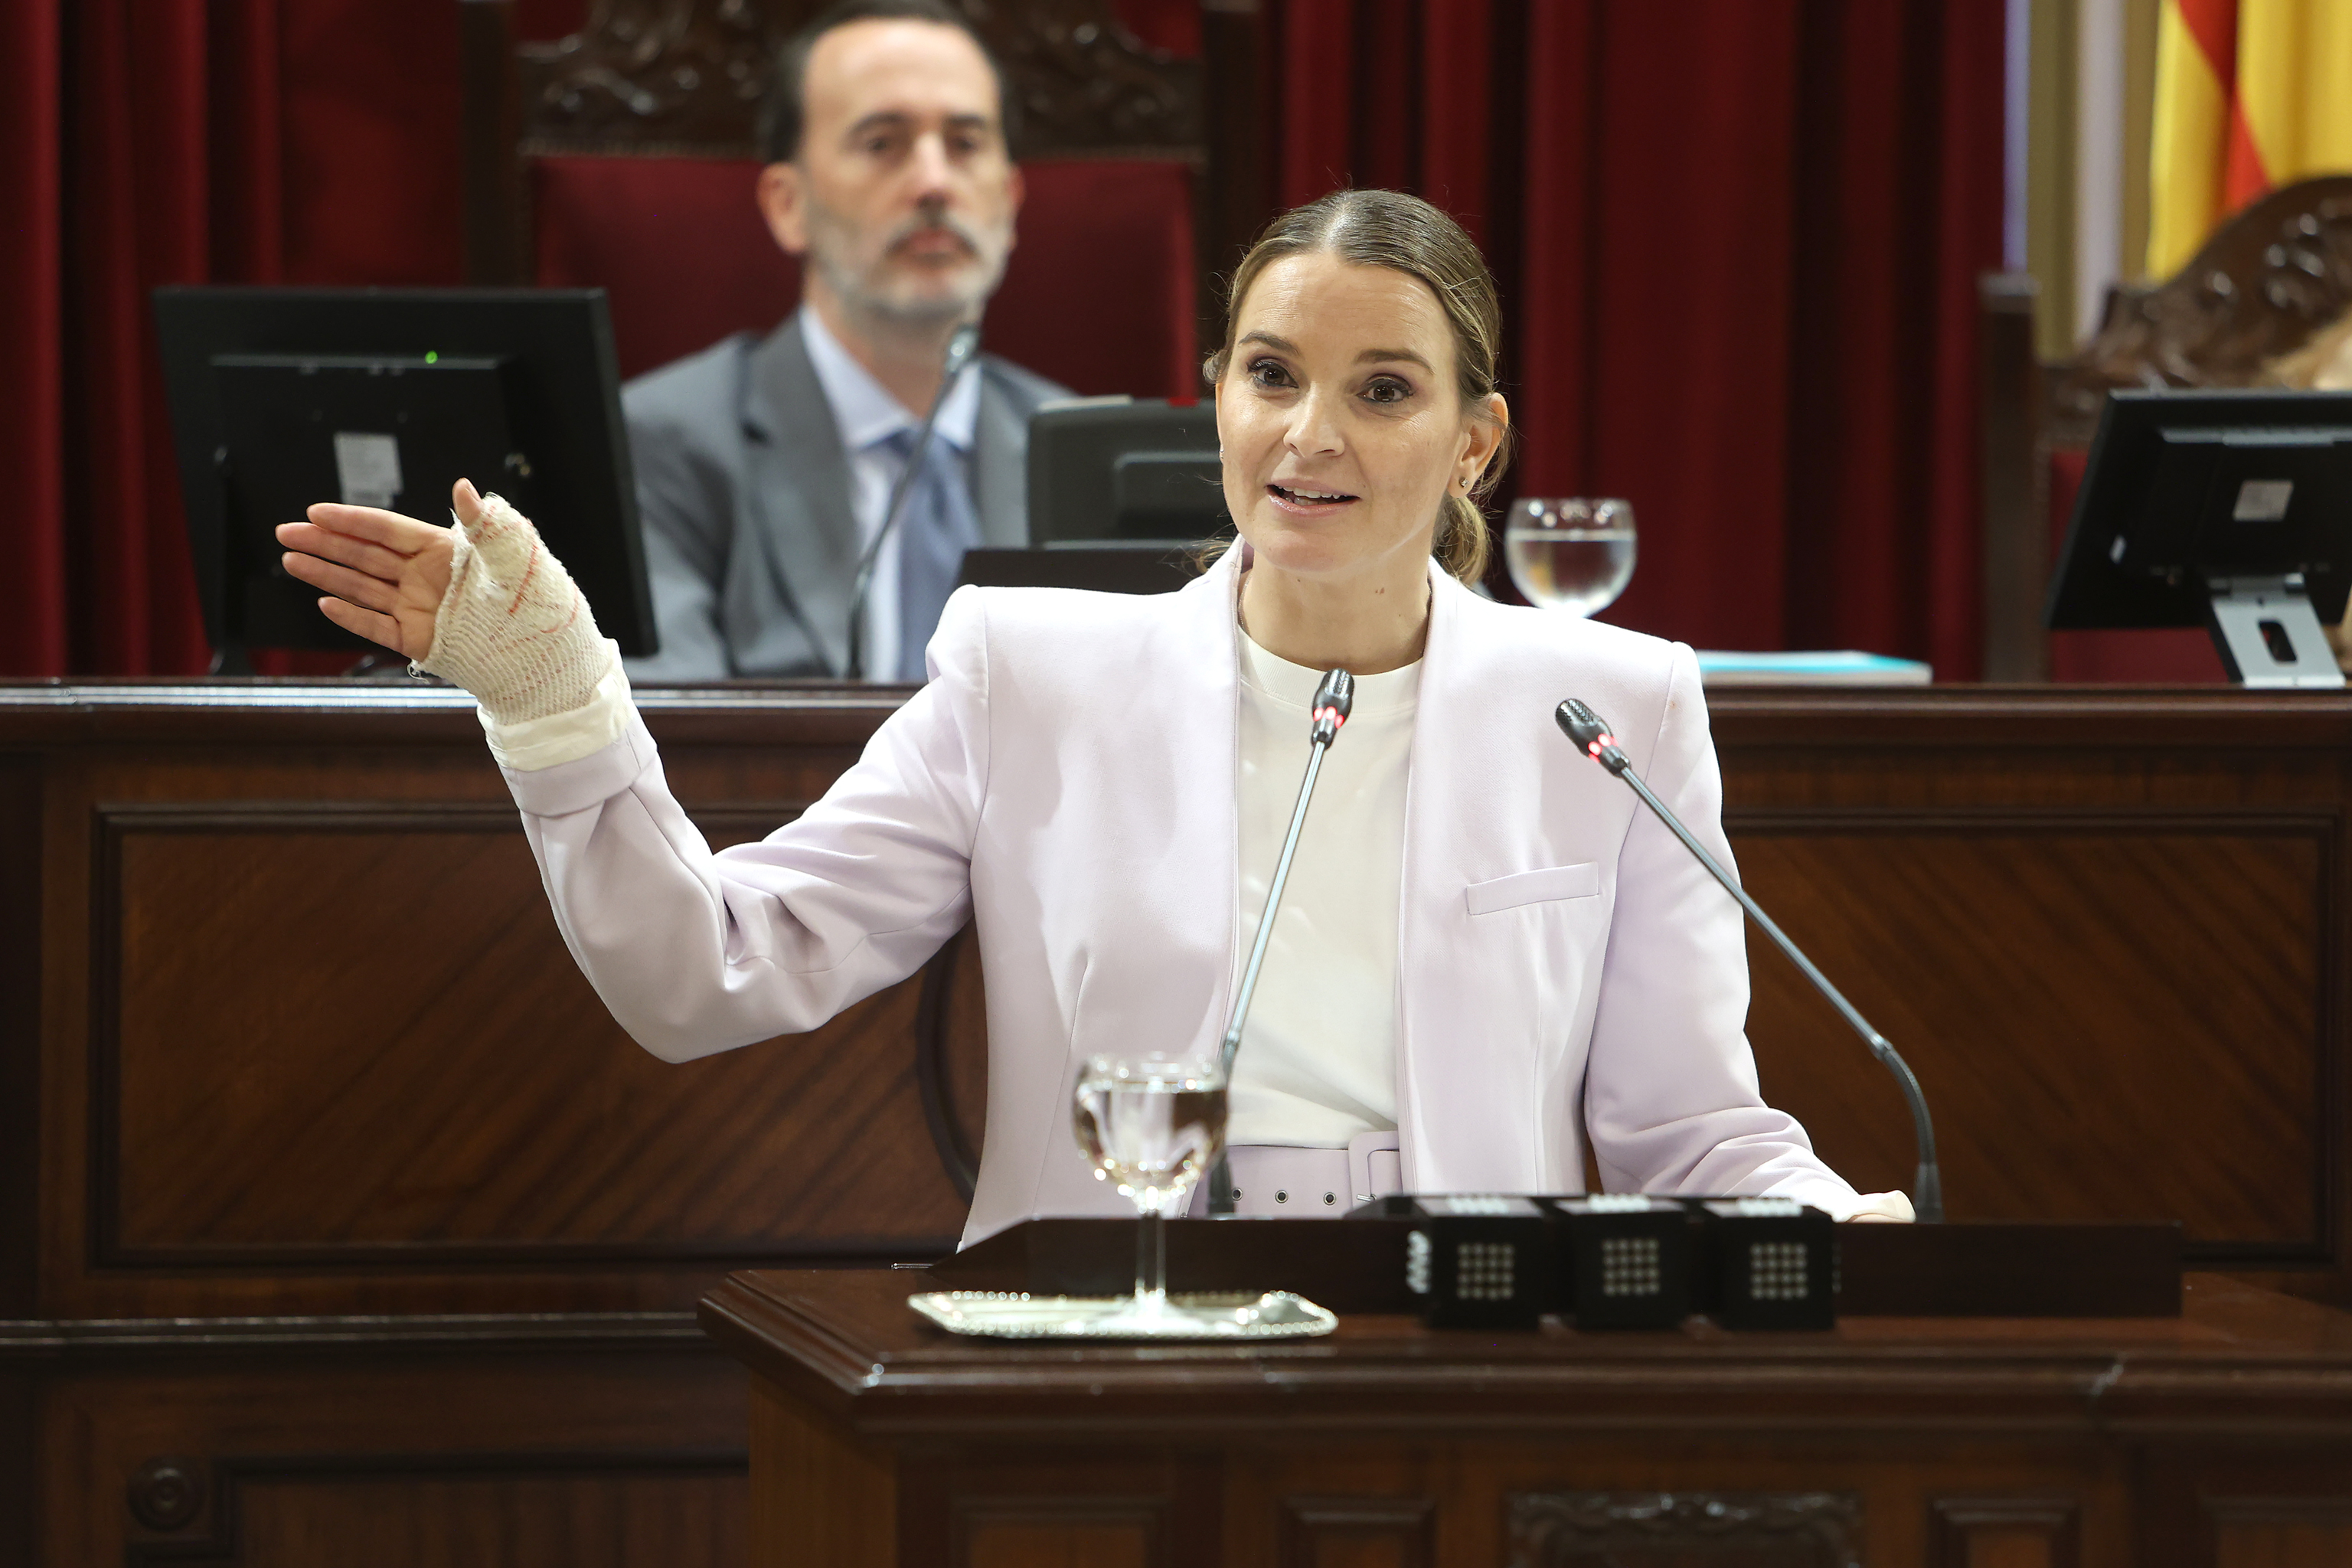 La presidenta balear, Prohens (PP), frente al presidente del Parlament, Le Senne (Vox)